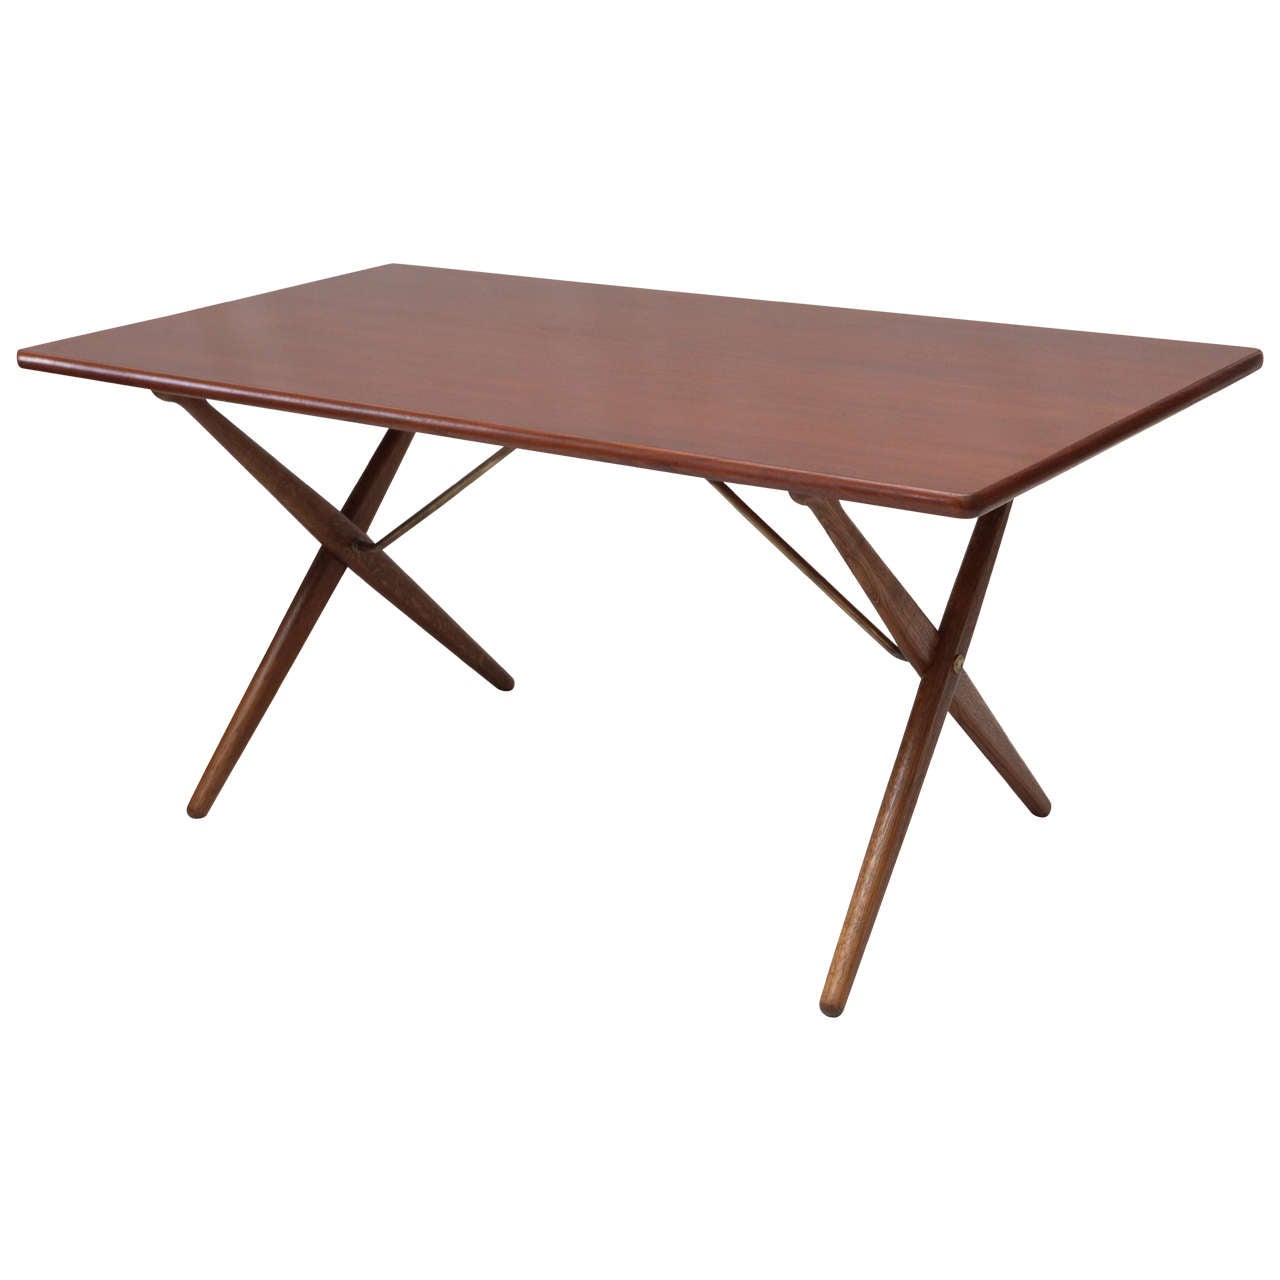 Hans Wegner AT 303 cross-leg table, 1950s, offered by Denmark 50